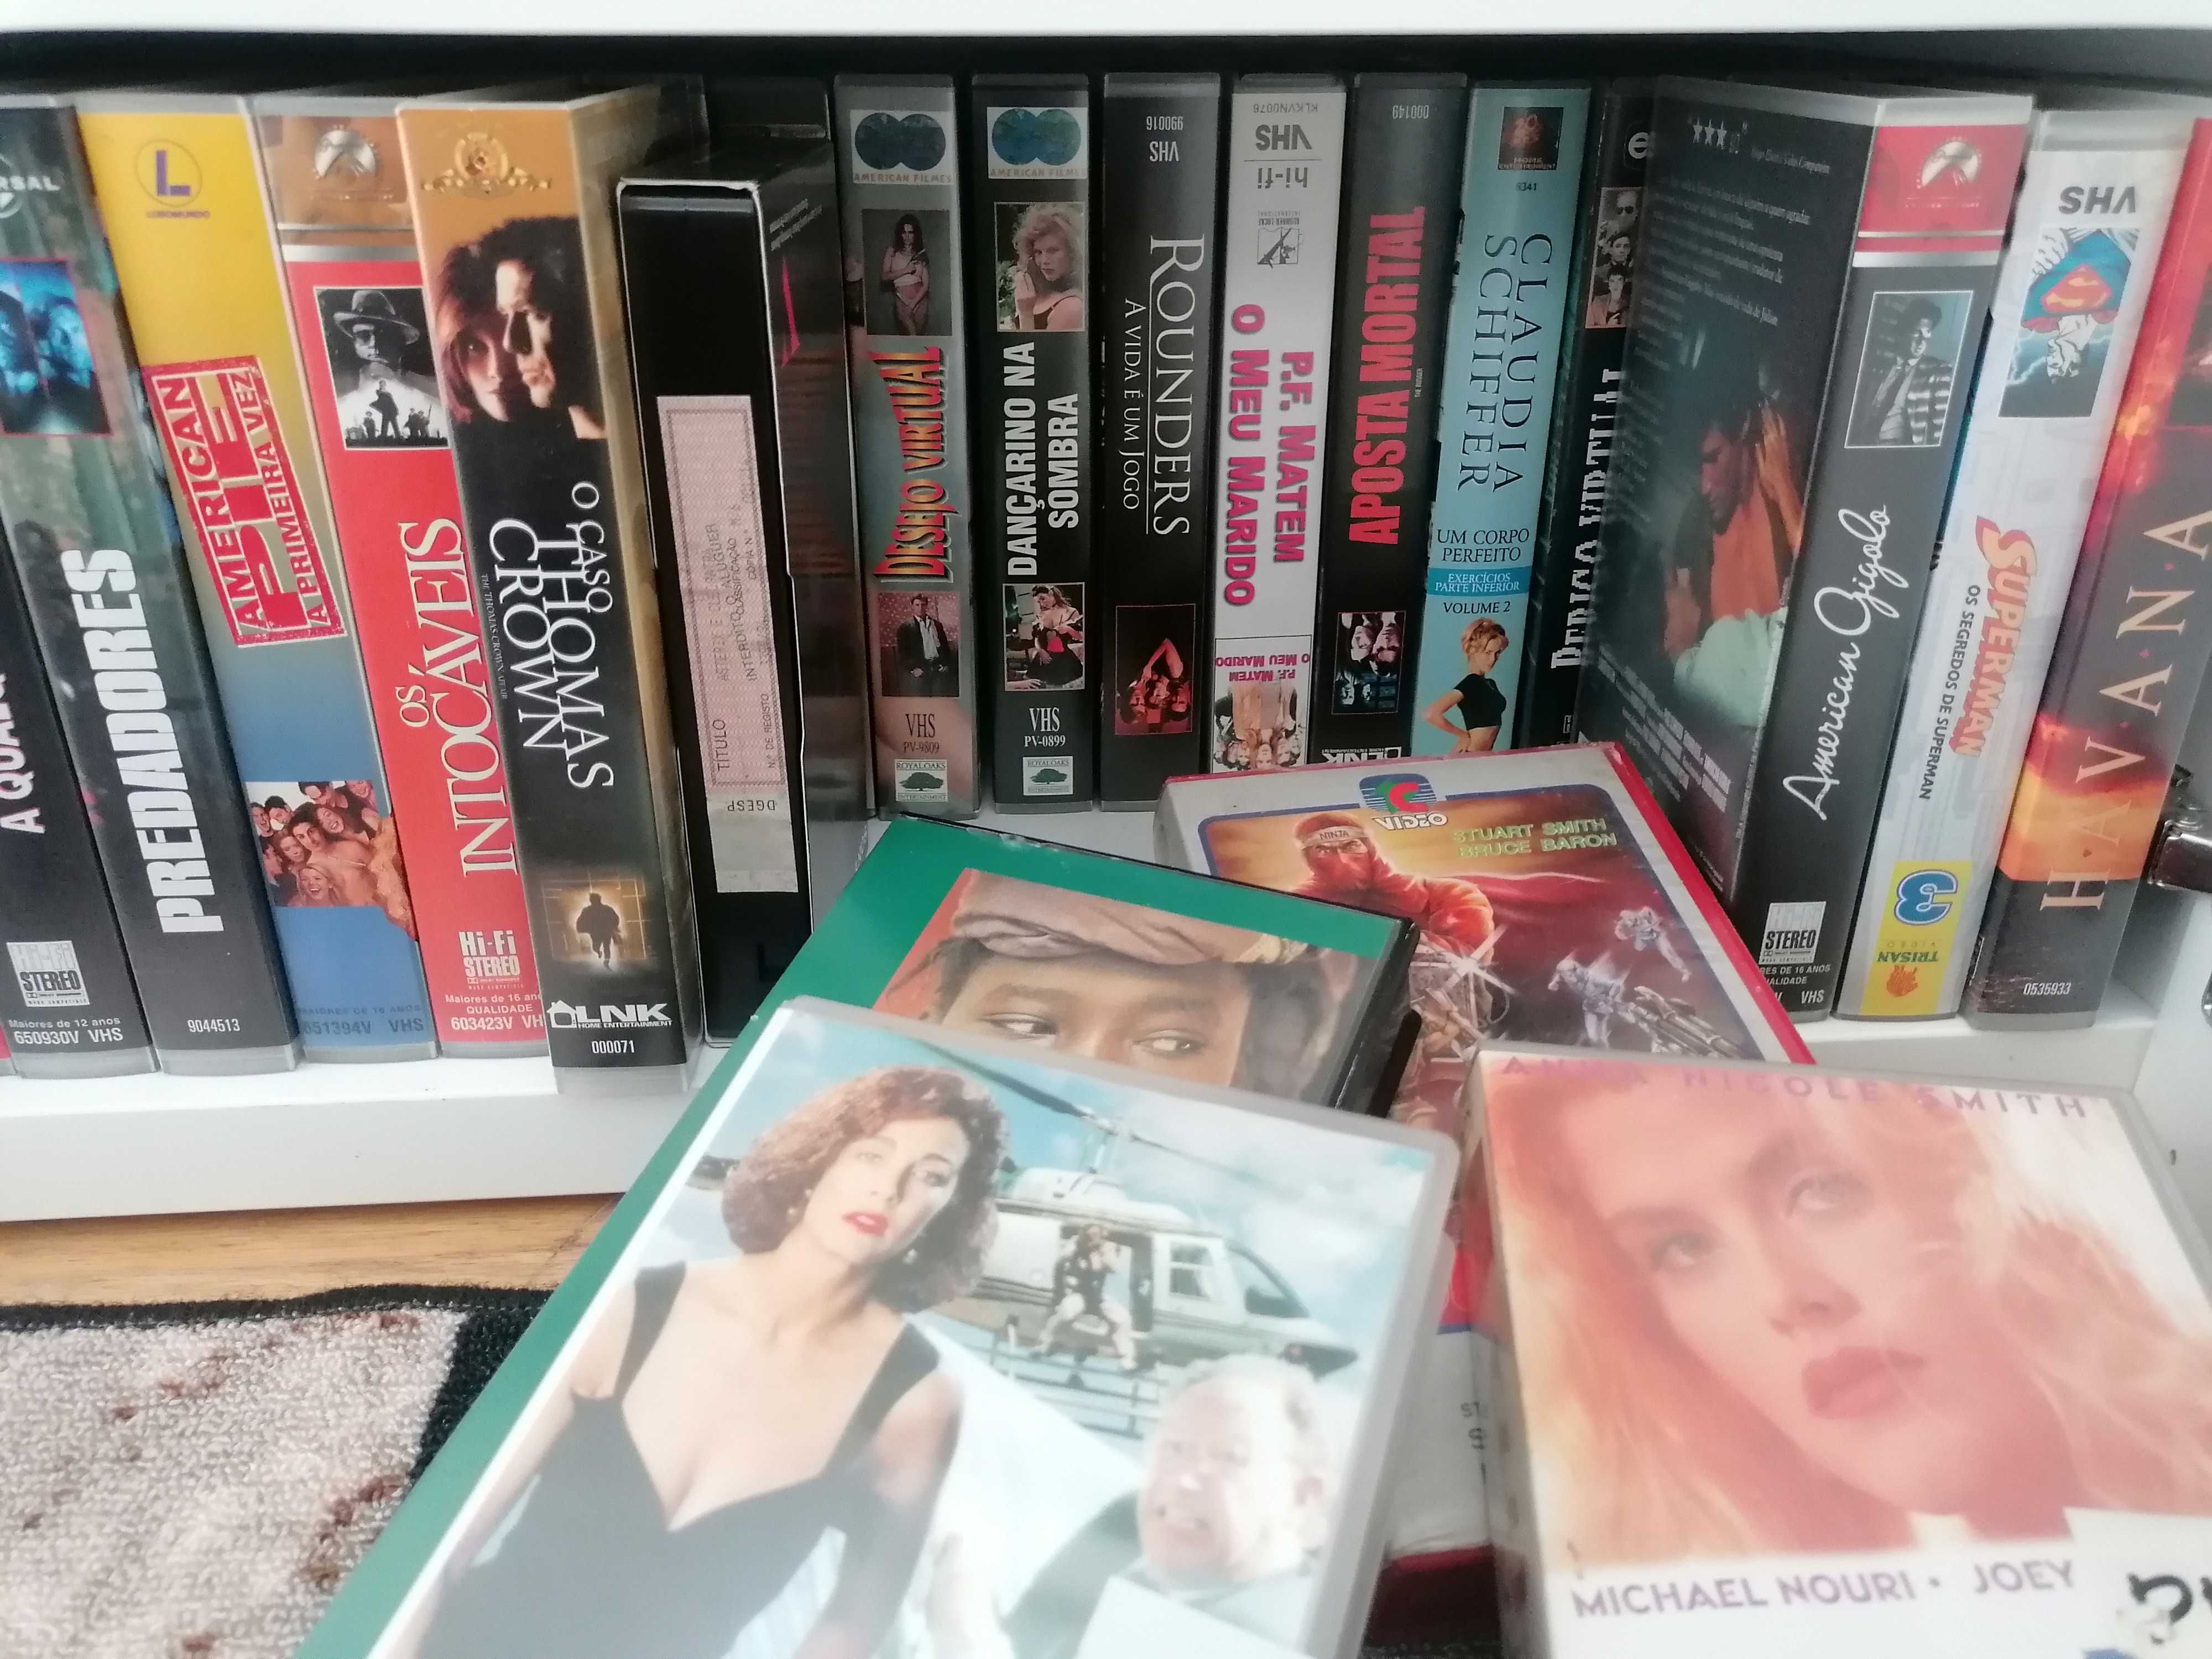 Filmes VHS, como novos. Drama, comédia, acção.